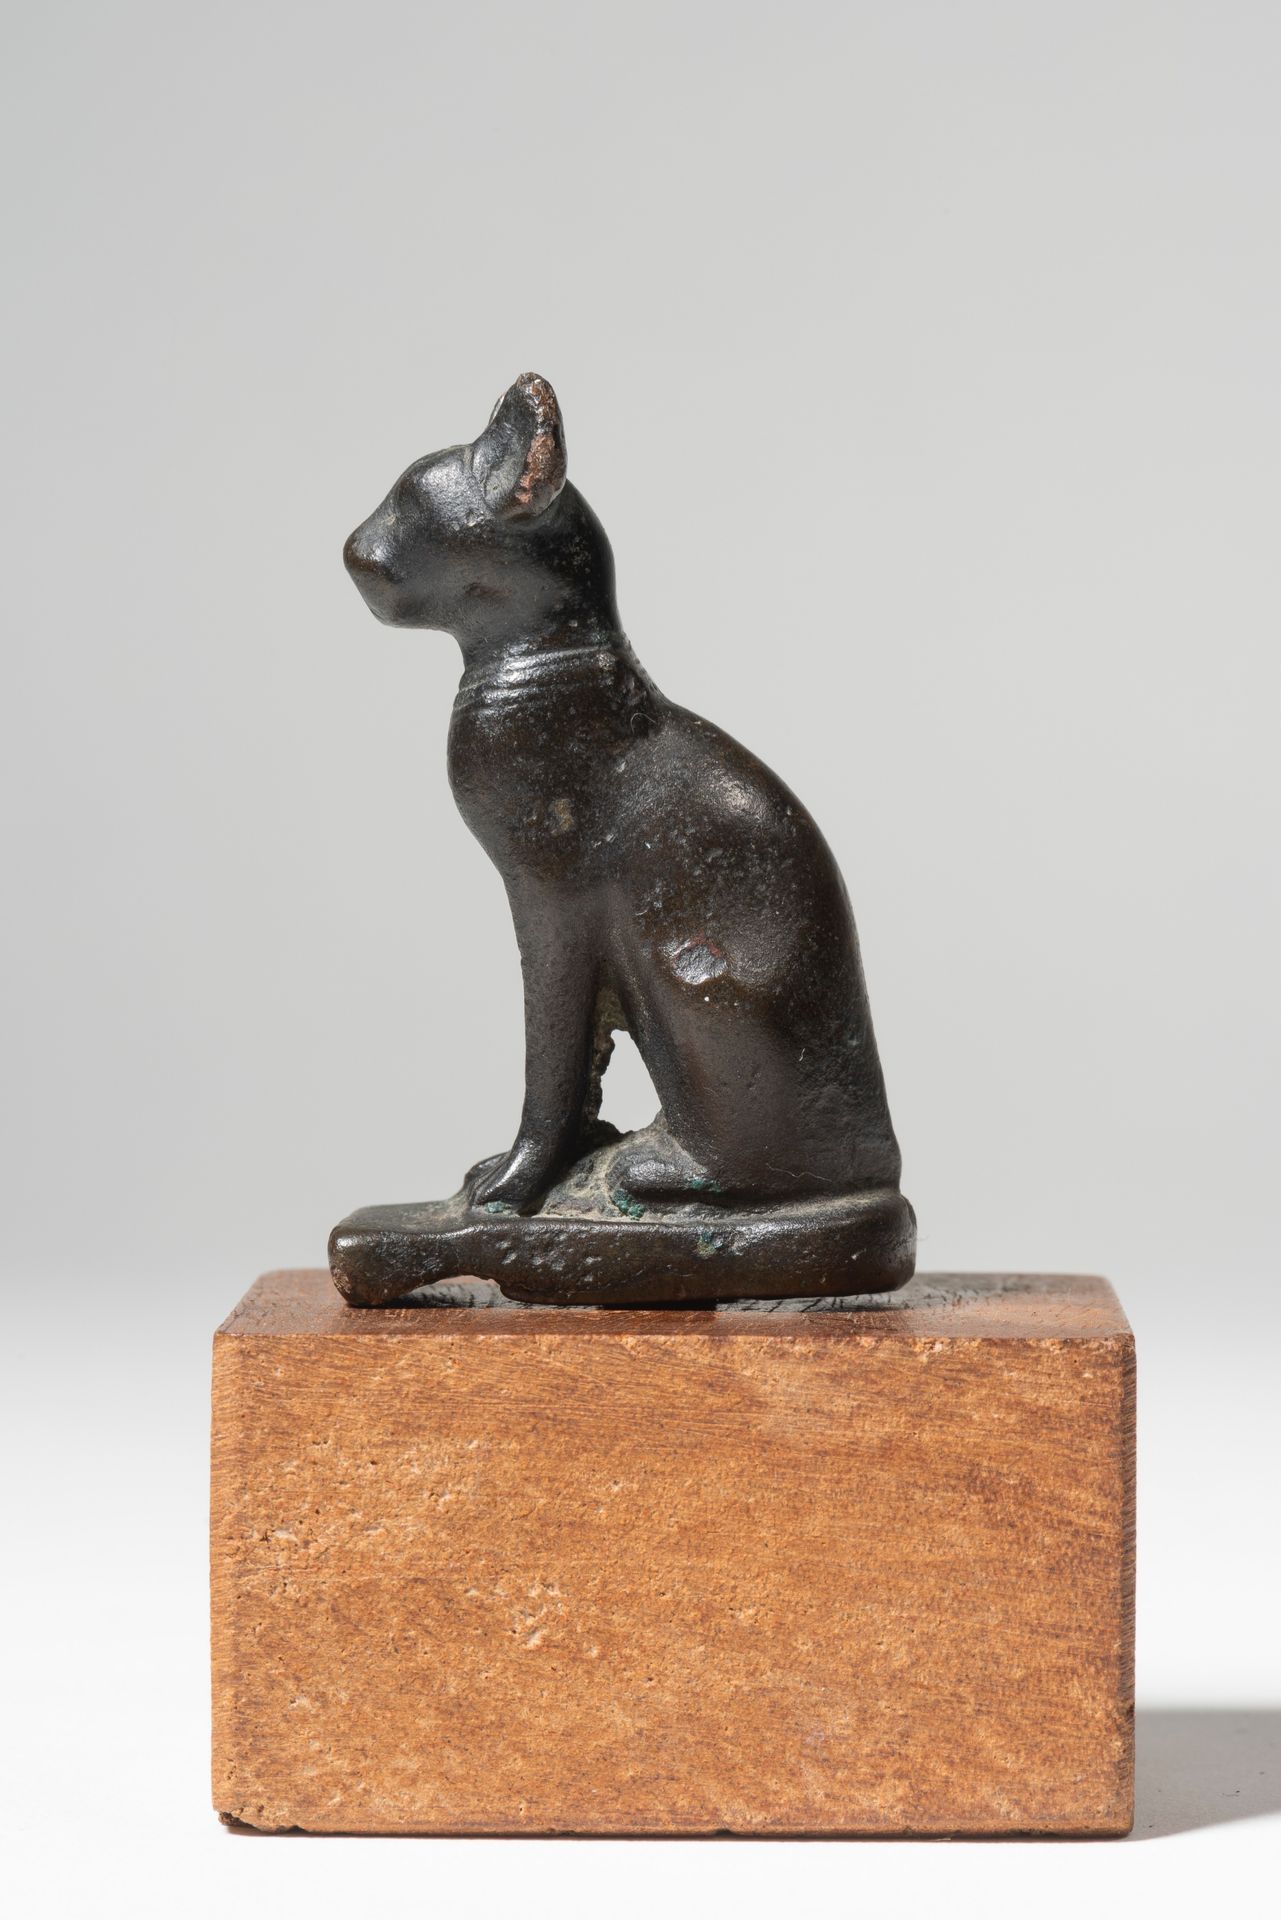 Statuette représentant la chatte Bastet assise 
EGYPT, LATE PERIOD





Statuett&hellip;